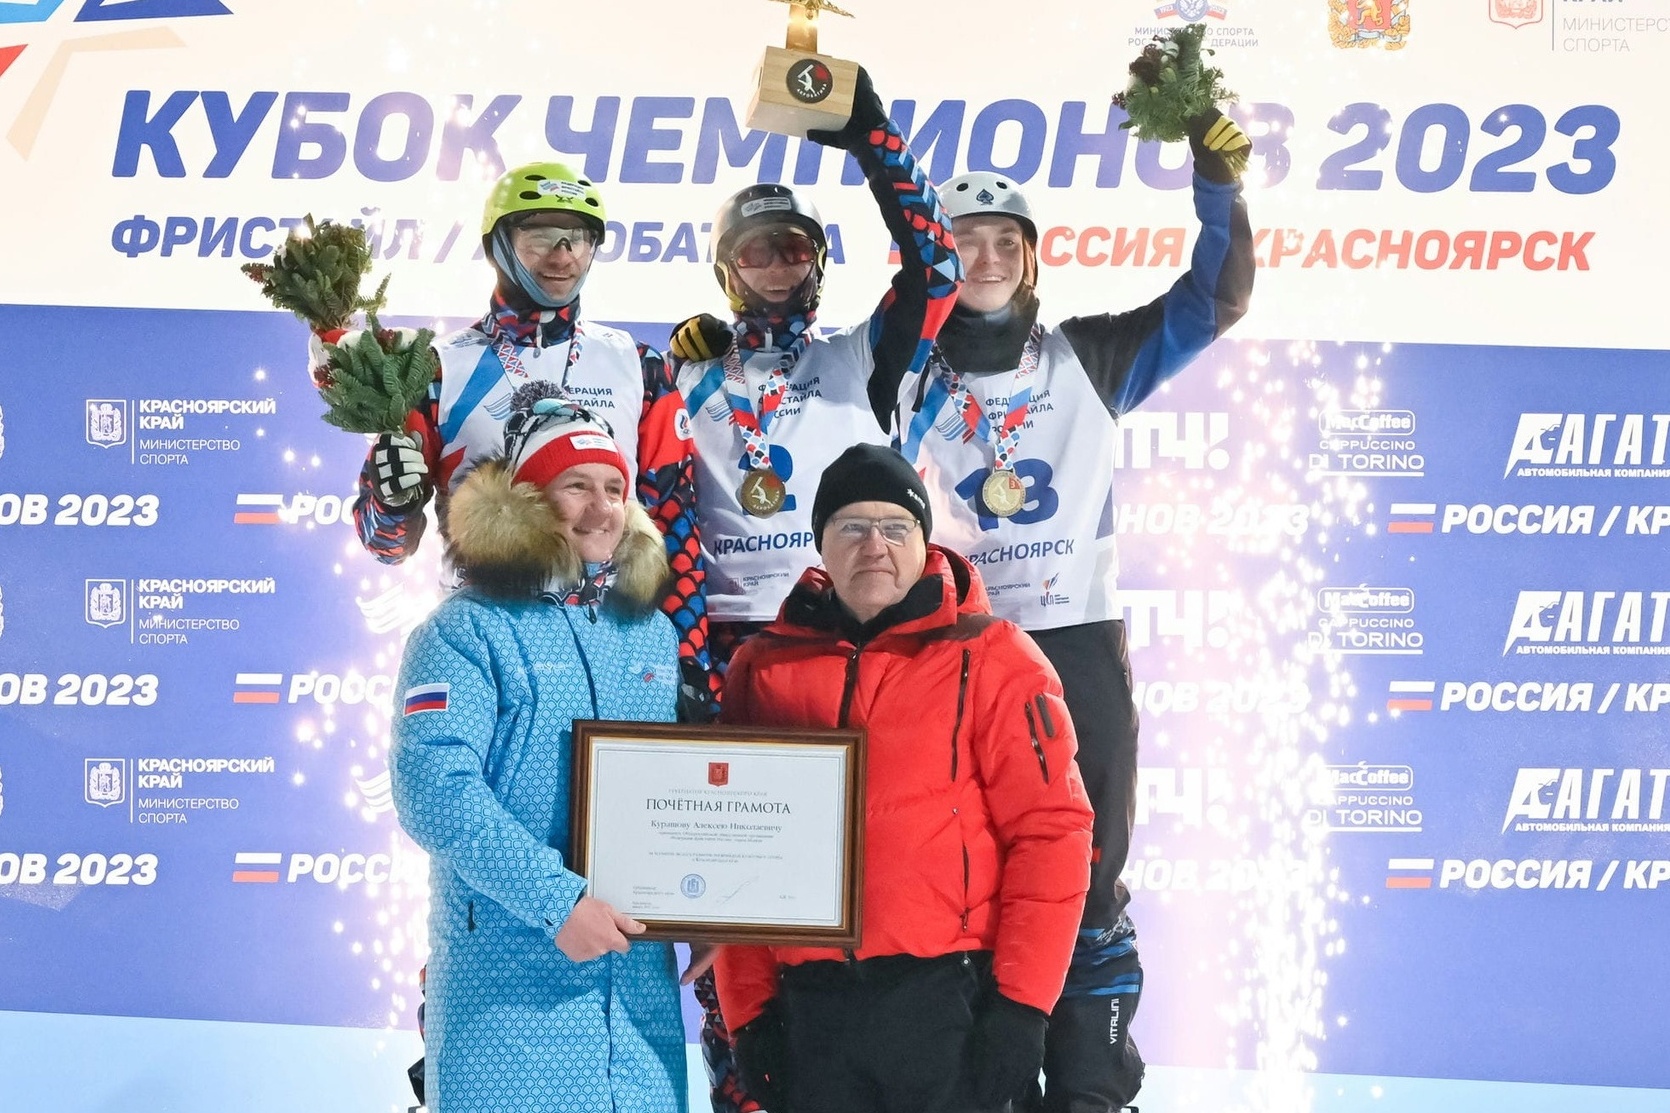 Ярославцы стали лучшими на первом этапе Кубка чемпионов по фристайлу